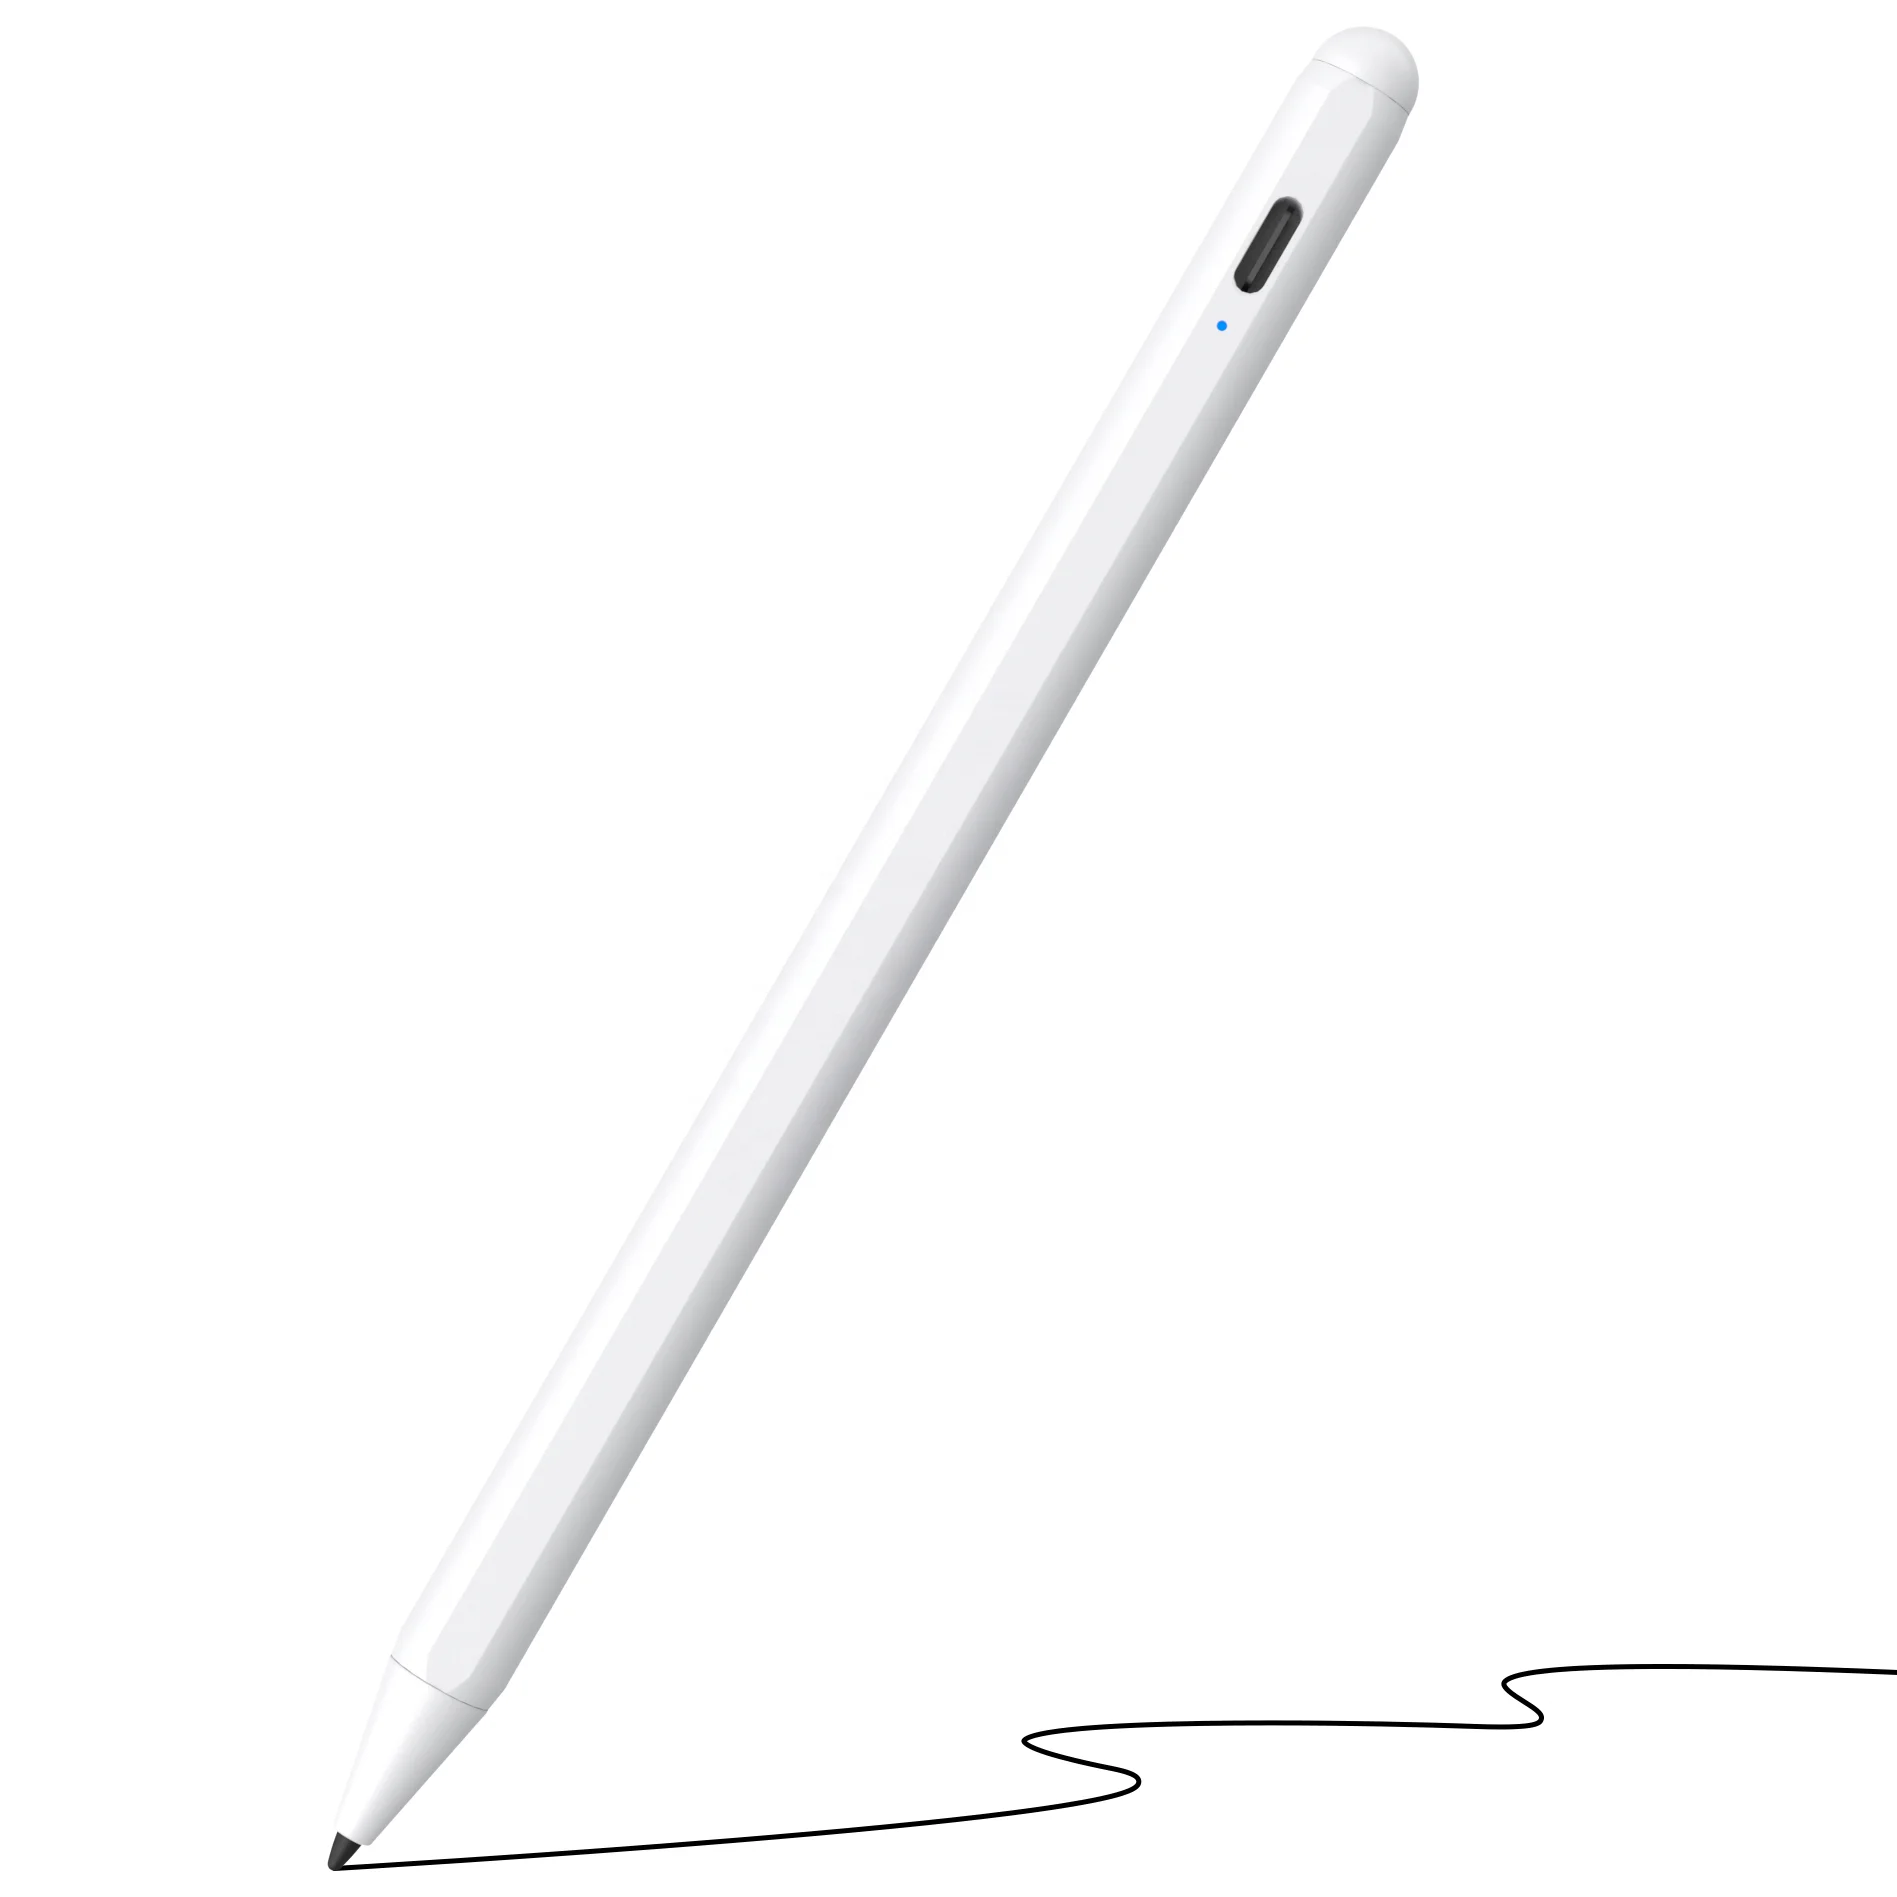 Стилус apple pencil 2 поколение. Стилус Apple Pencil 2. Active Stylus Pen для IPAD Pro. Стилус Apple Pencil (2nd Generation) для IPAD Pro mu8f2zm/a. Стилус 2 поколения для IPAD.